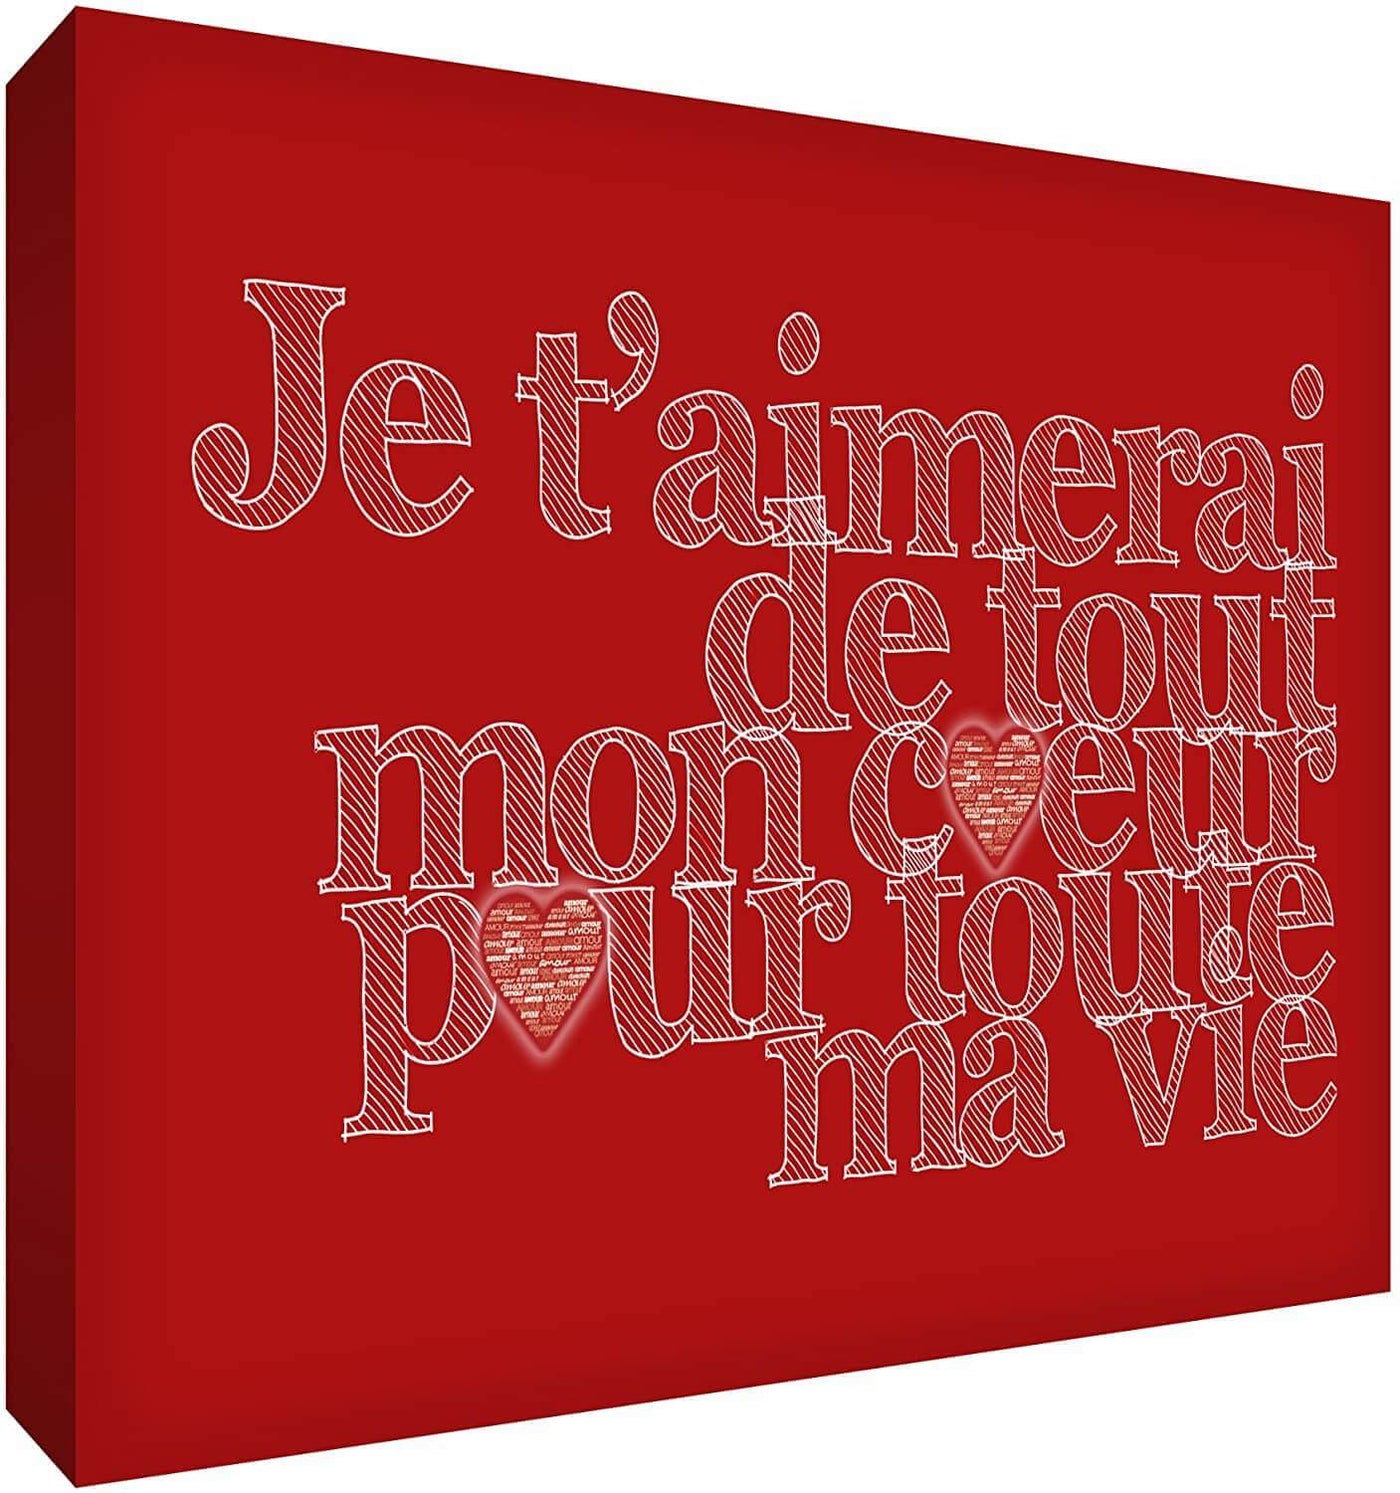 Feel Good Art Canvas Art with French Text - J'aimerai de tout mon coeur pour toute la vie Size Name: 30 x 40 cm Colour Name: Red nursery art Earthlets